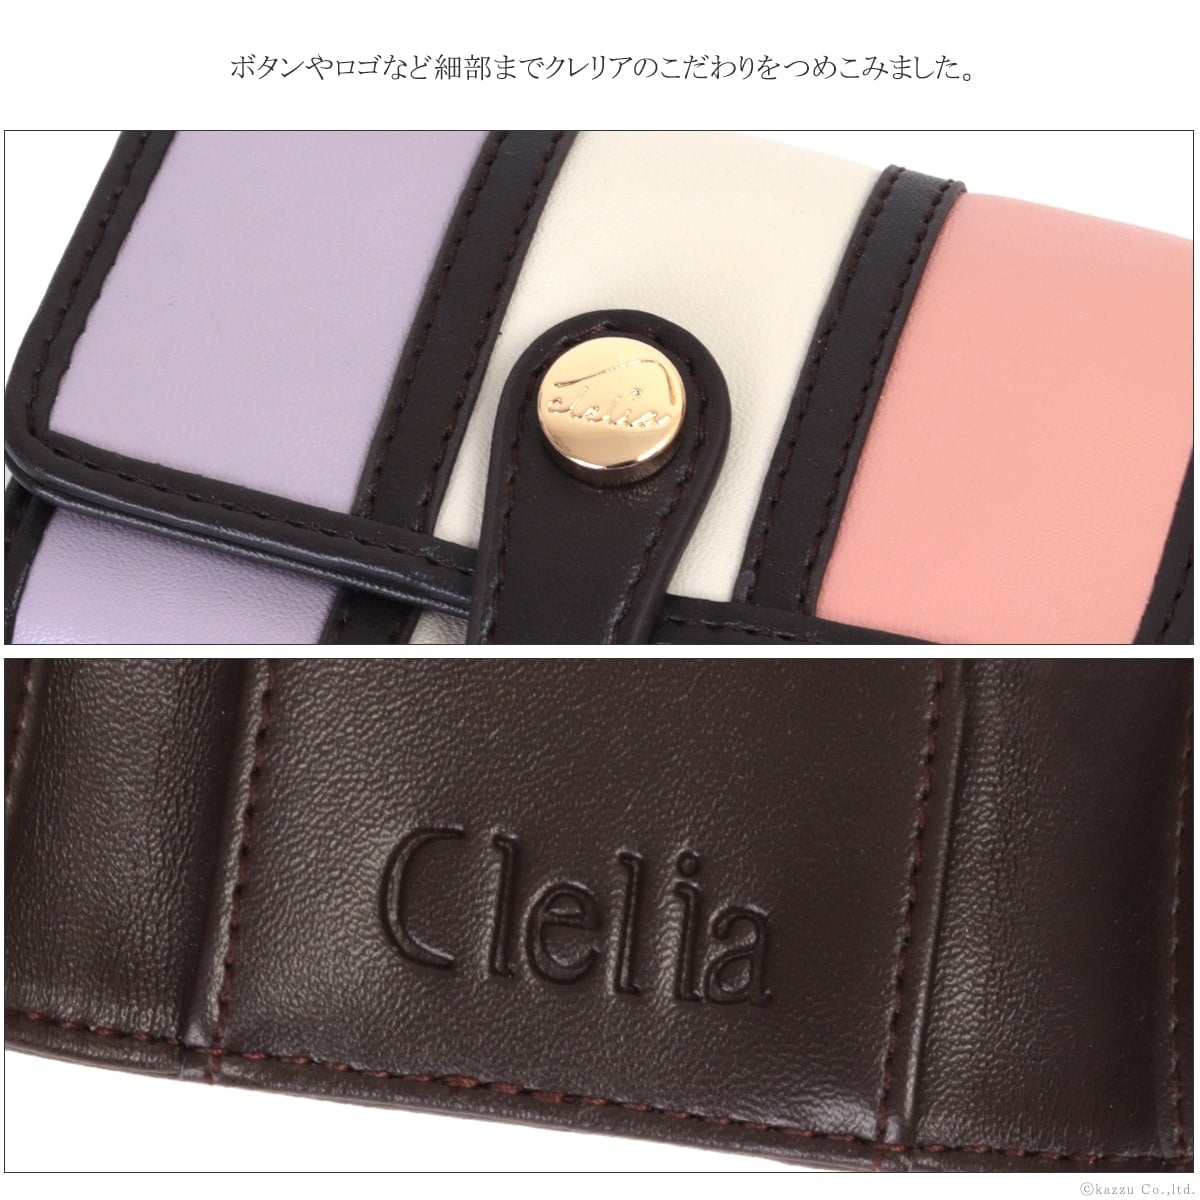 Clelia6連カードポケット付きキーケース